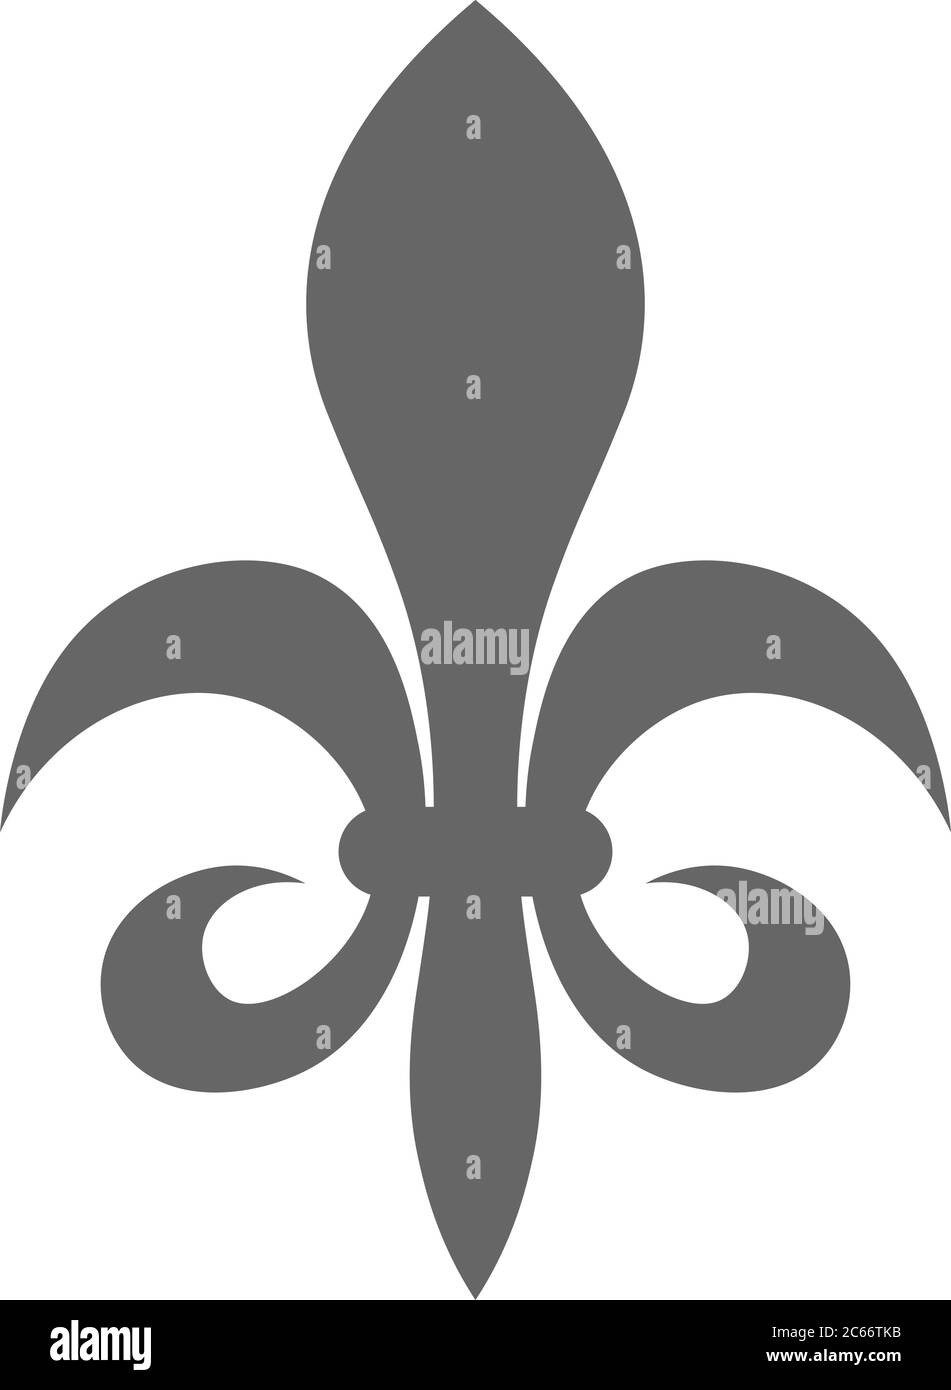 Il fleur-de-lis o fiore-de-luce segno di giglio utilizzato come disegno decorativo o simbolo in eraldry. Semplice ed elegante immagine vettoriale in grigio su sfondo bianco. Illustrazione Vettoriale